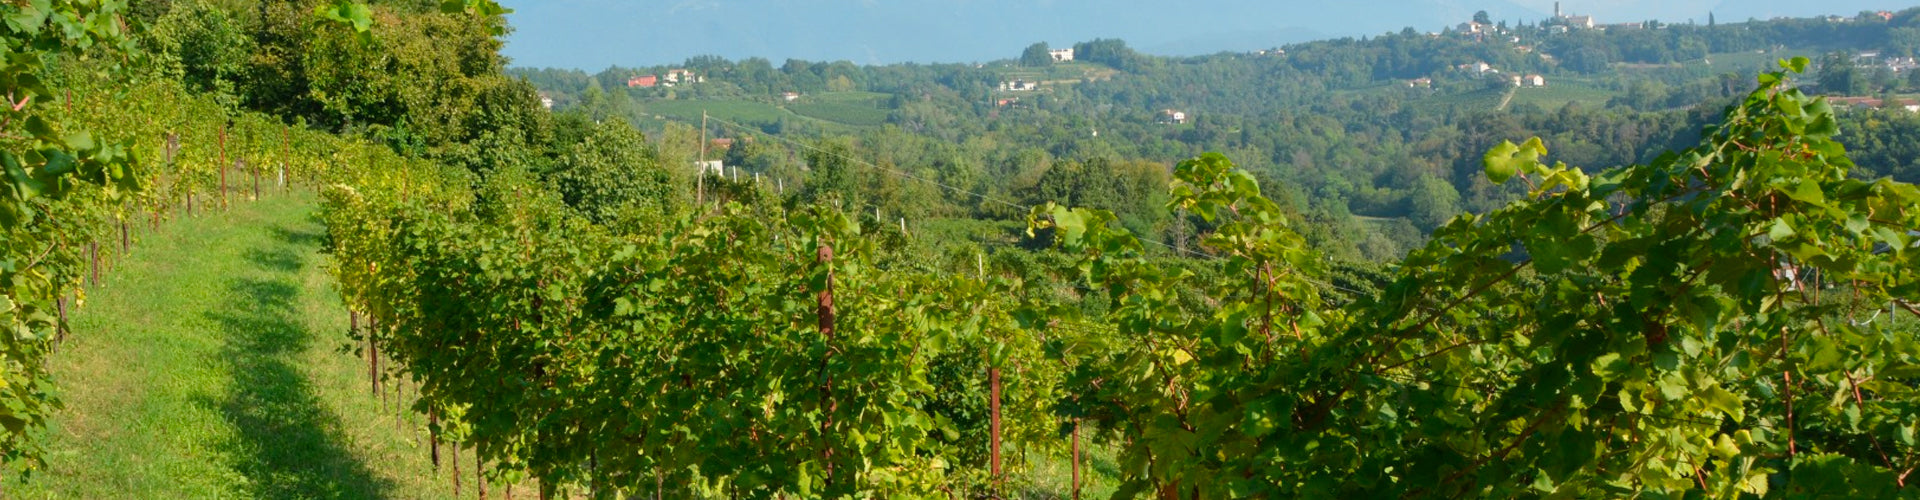 Frassinelli Vineyards in Prosecco